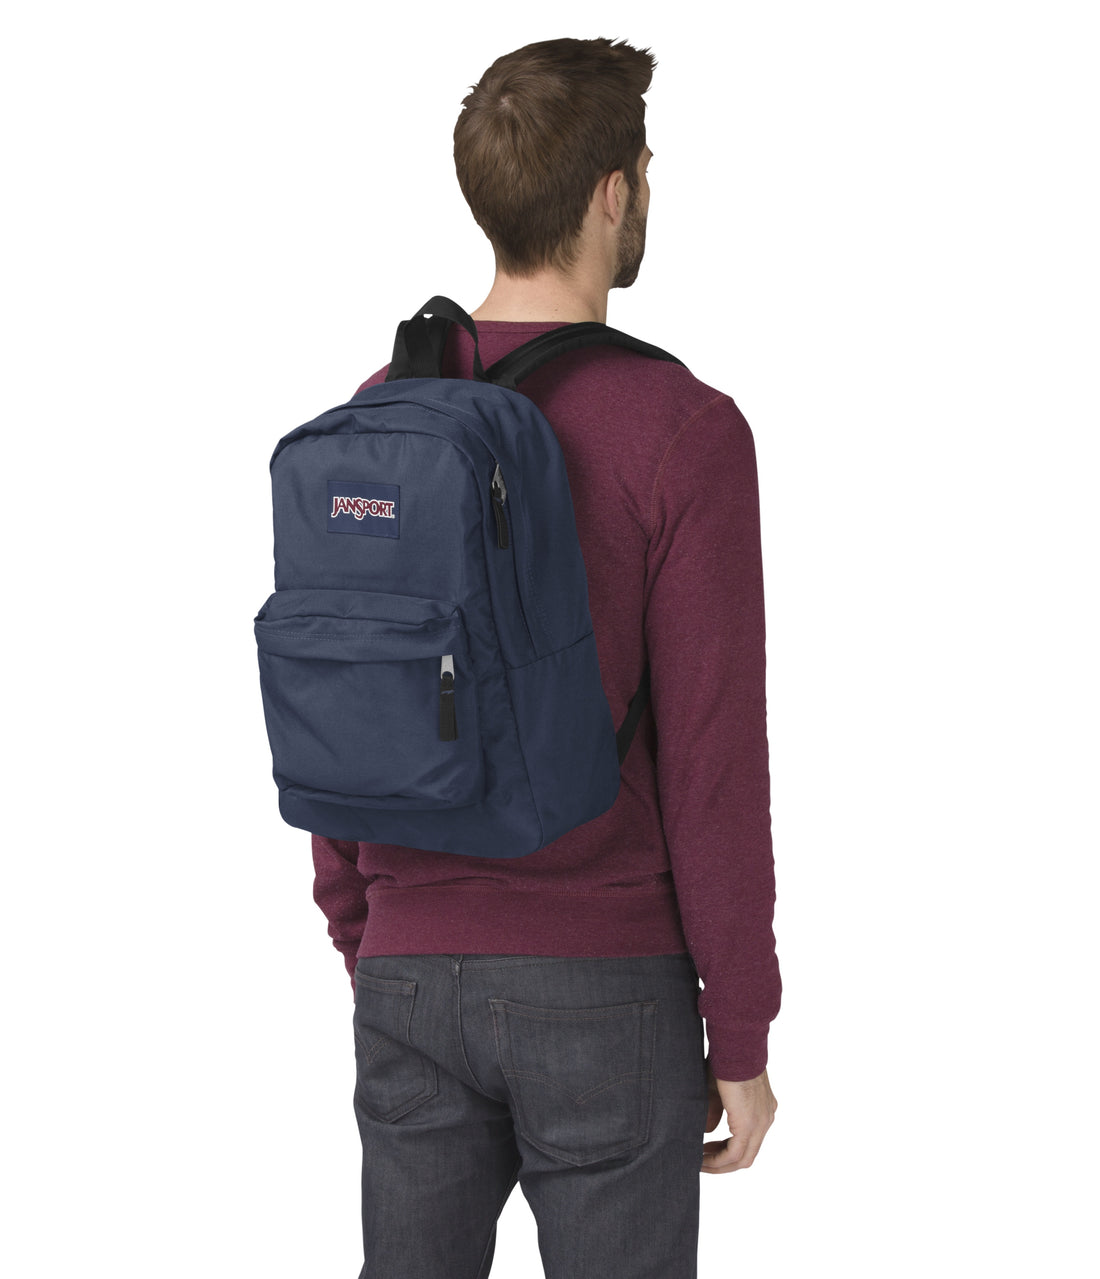 Superbreak One Backpack-Backpack-Jansport-Navy-SchoolBagsAndStuff